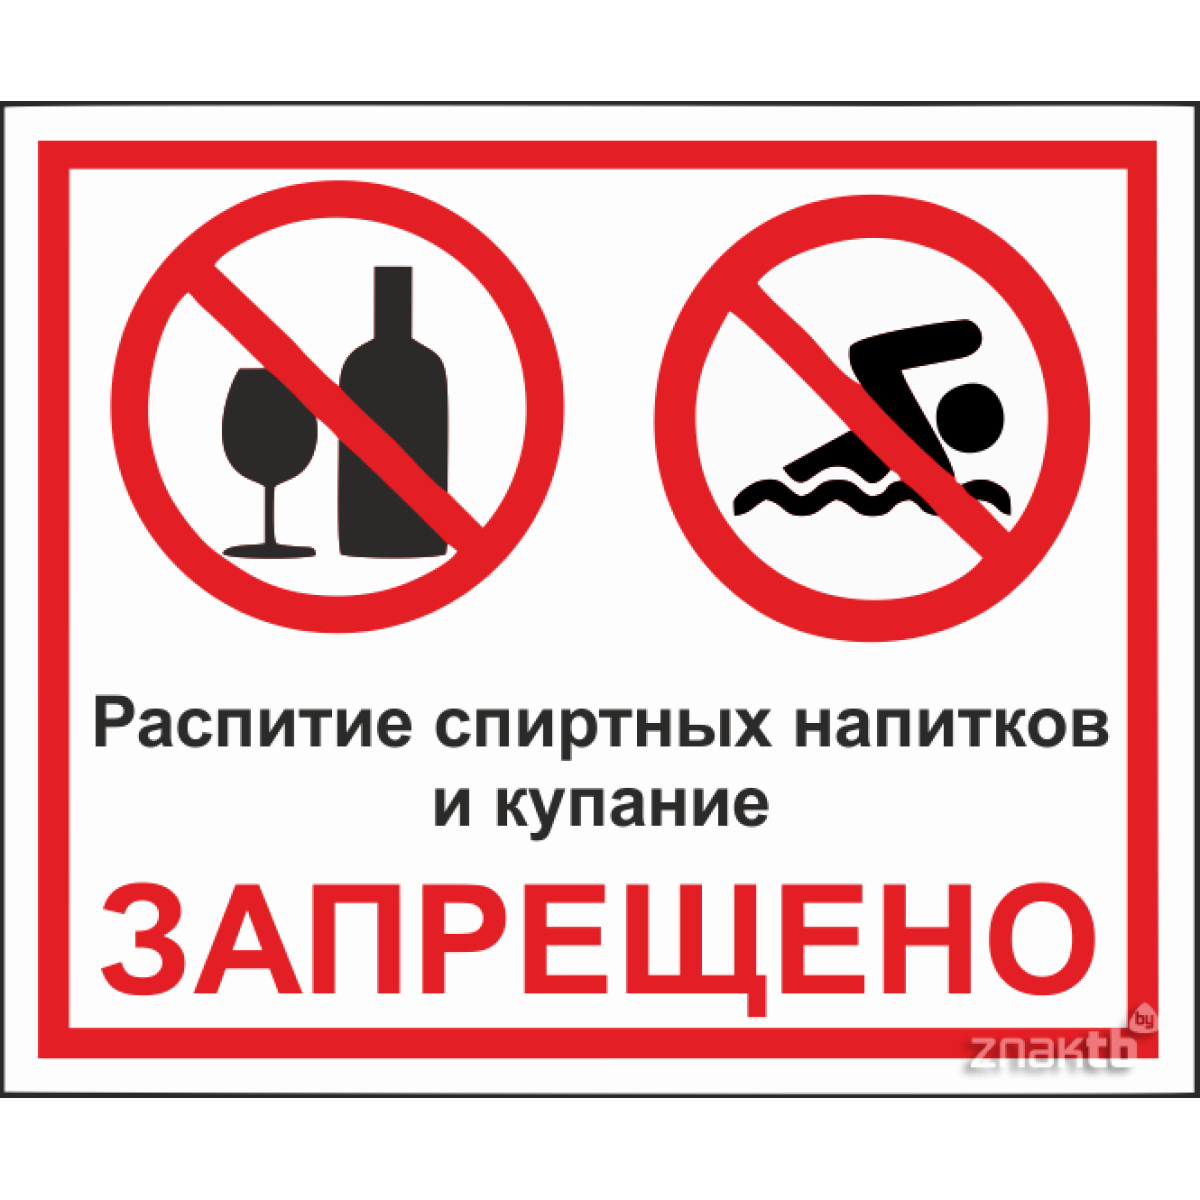 Распитие спиртных напитков и купание запрещено 